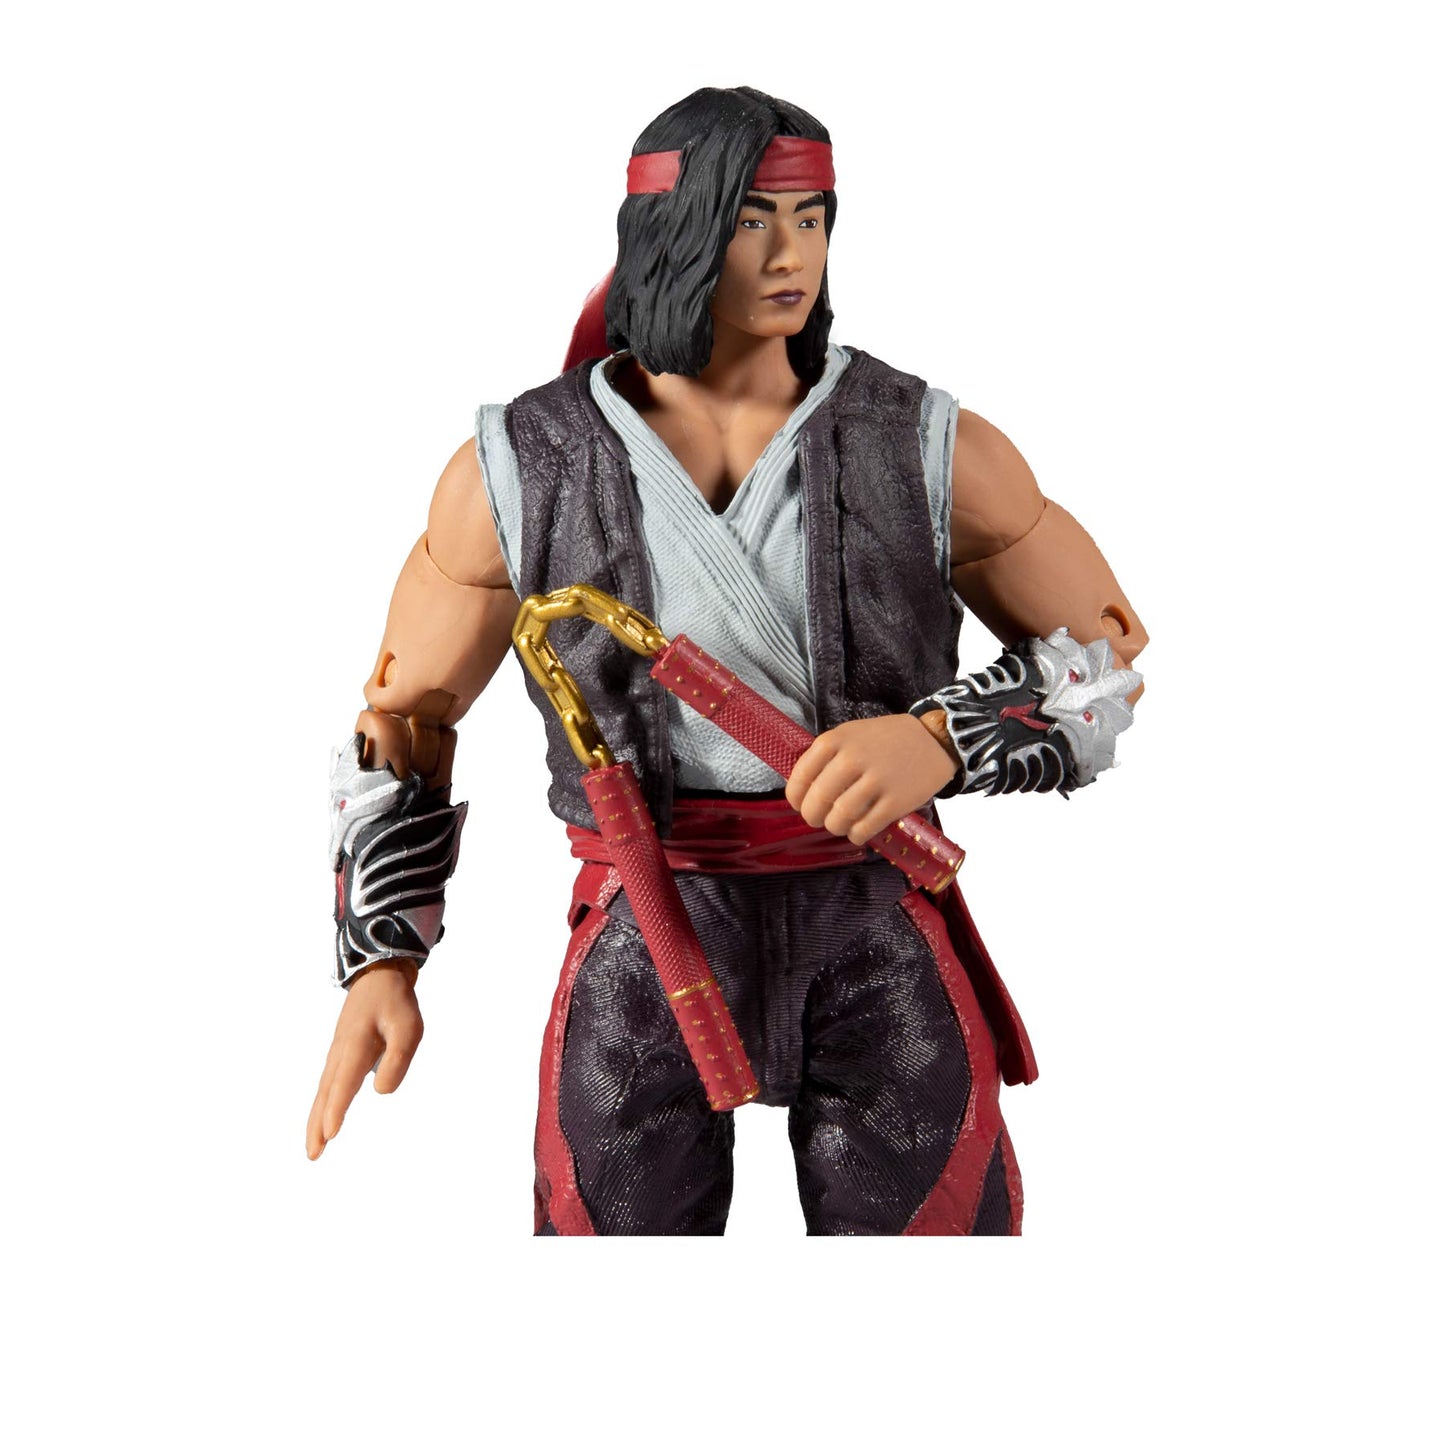 McFarlane Toys - Mortal Kombat - Liu Kang Action Figure (11036-4)